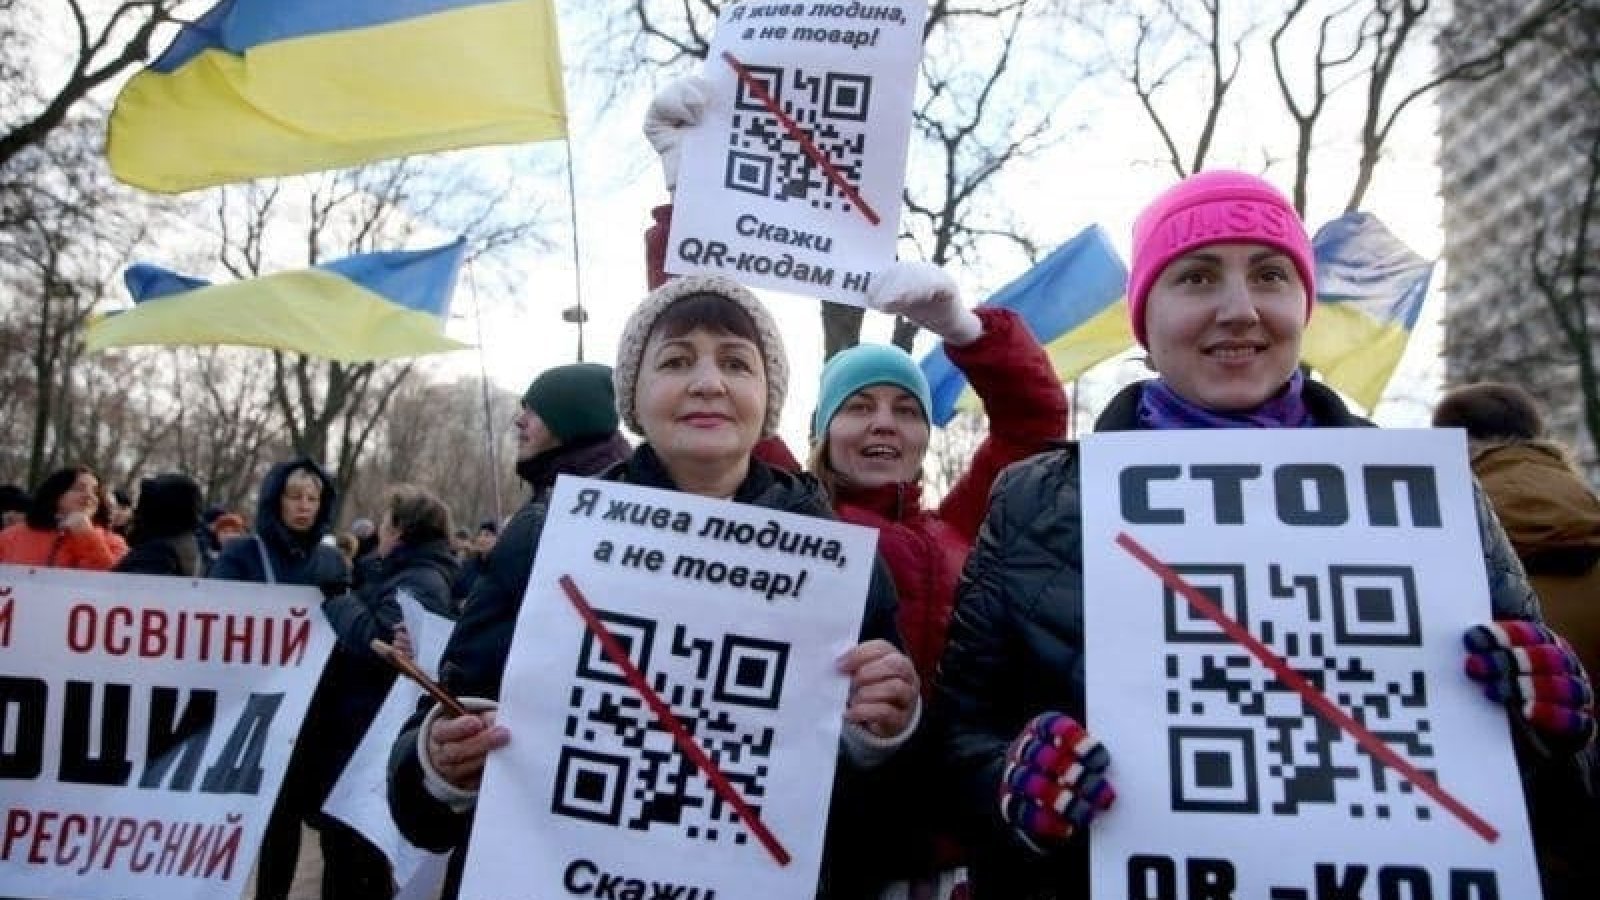 Митинги антивакцинаторов собираются из-за страха и недоверия к власти, — Ольга Богомолец